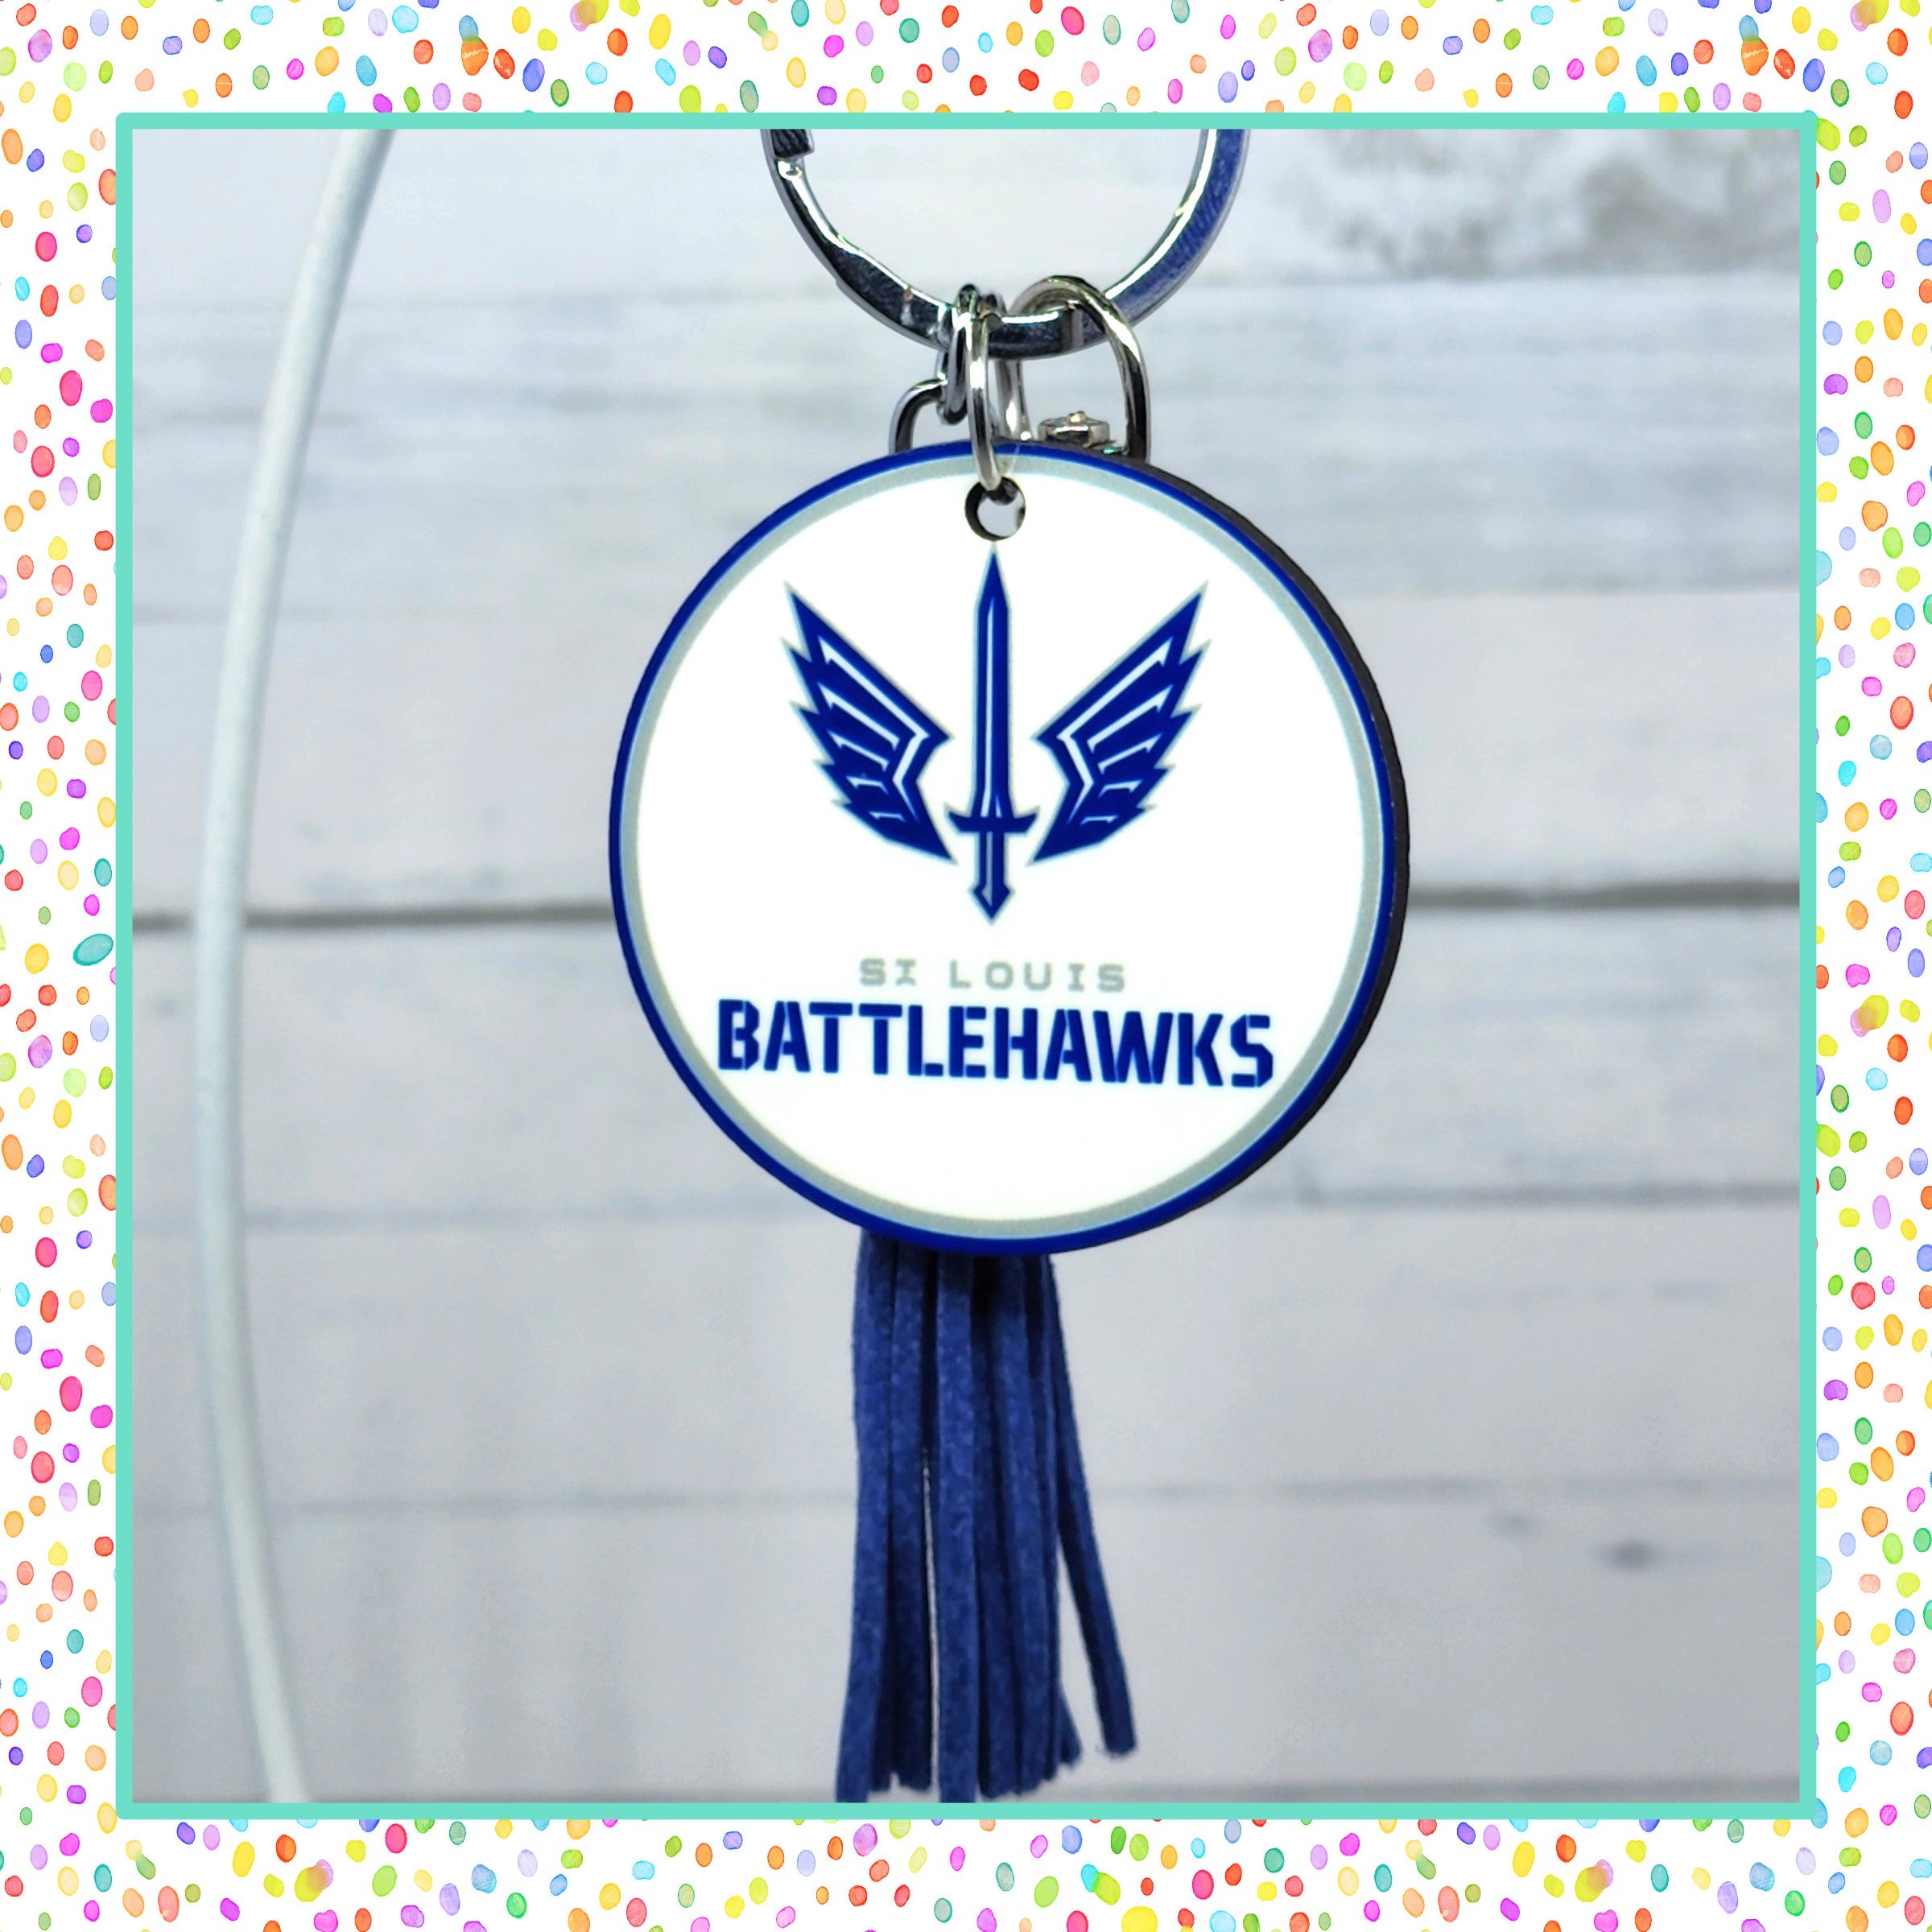 St. Louis Battlehawks Keychain